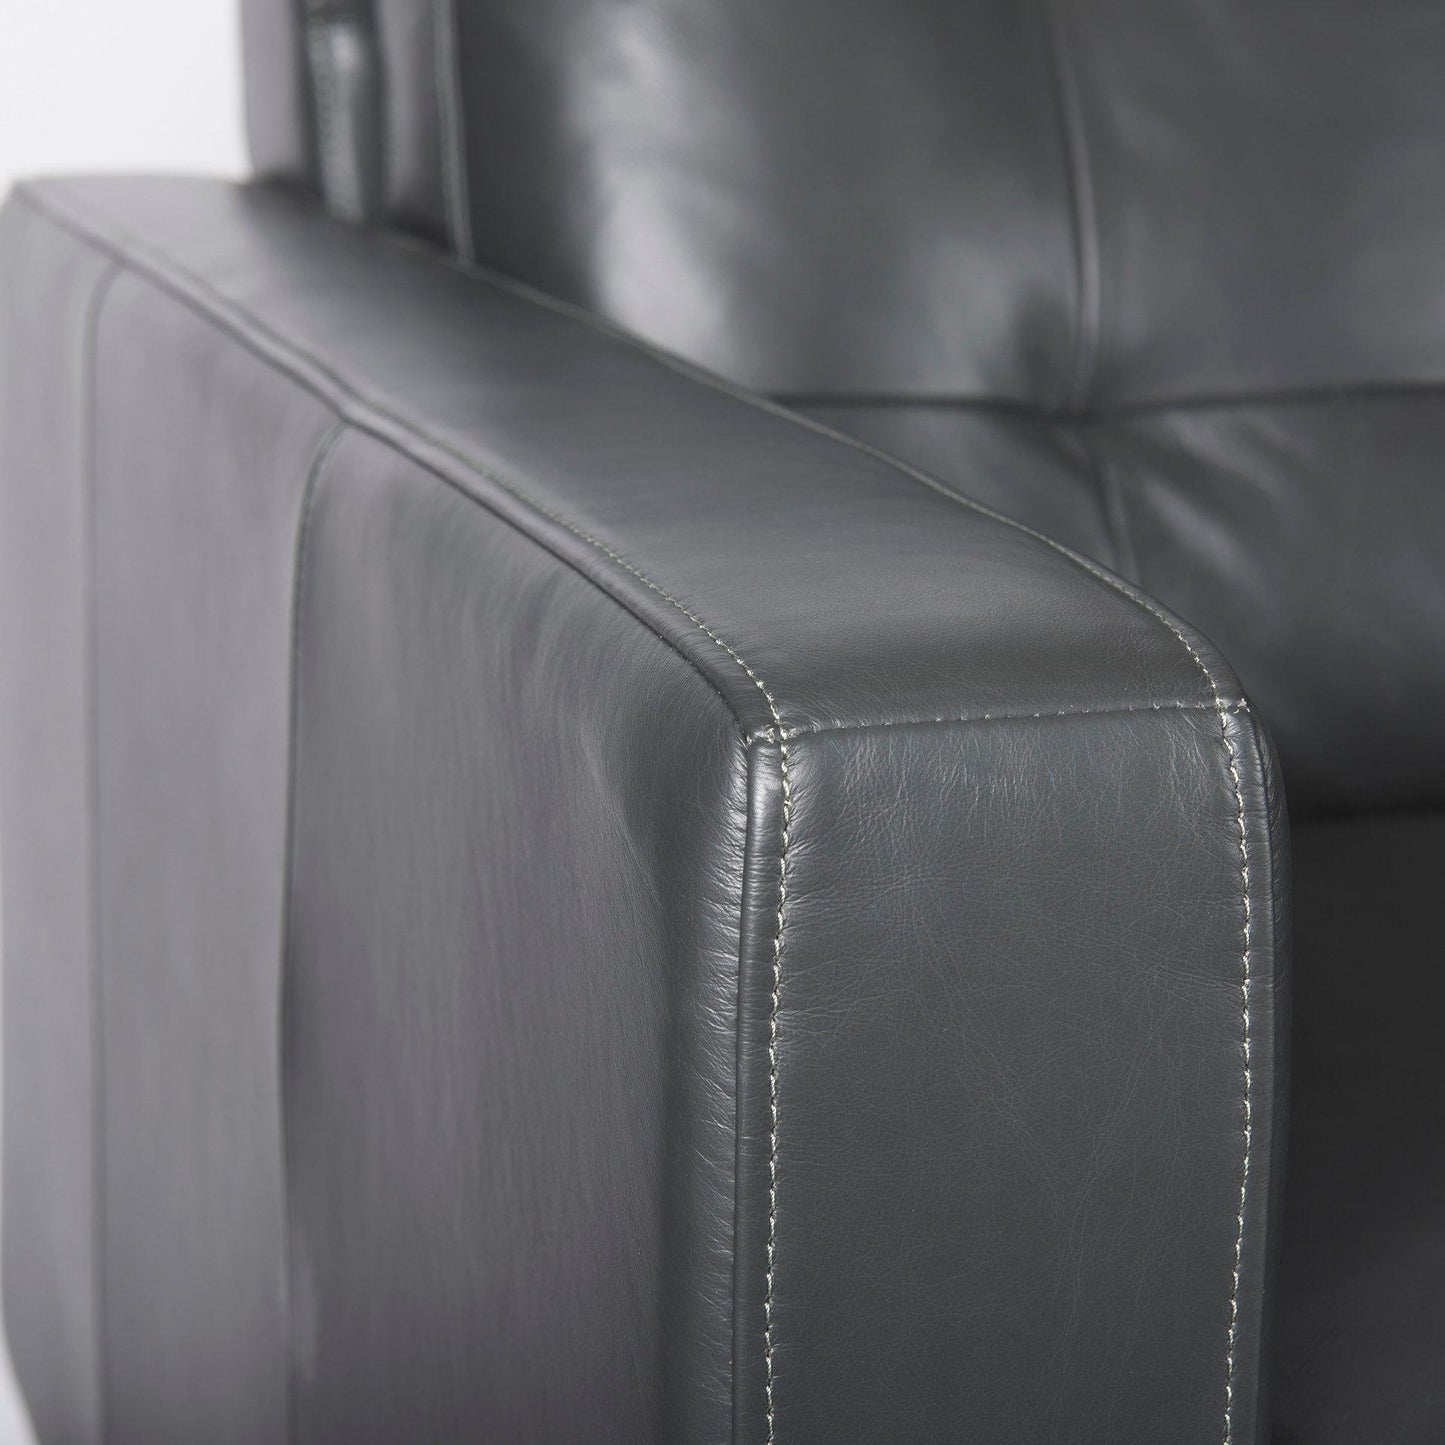 Olaf 88.0L x 38.0W x 35.0H Grey Leather Sofa